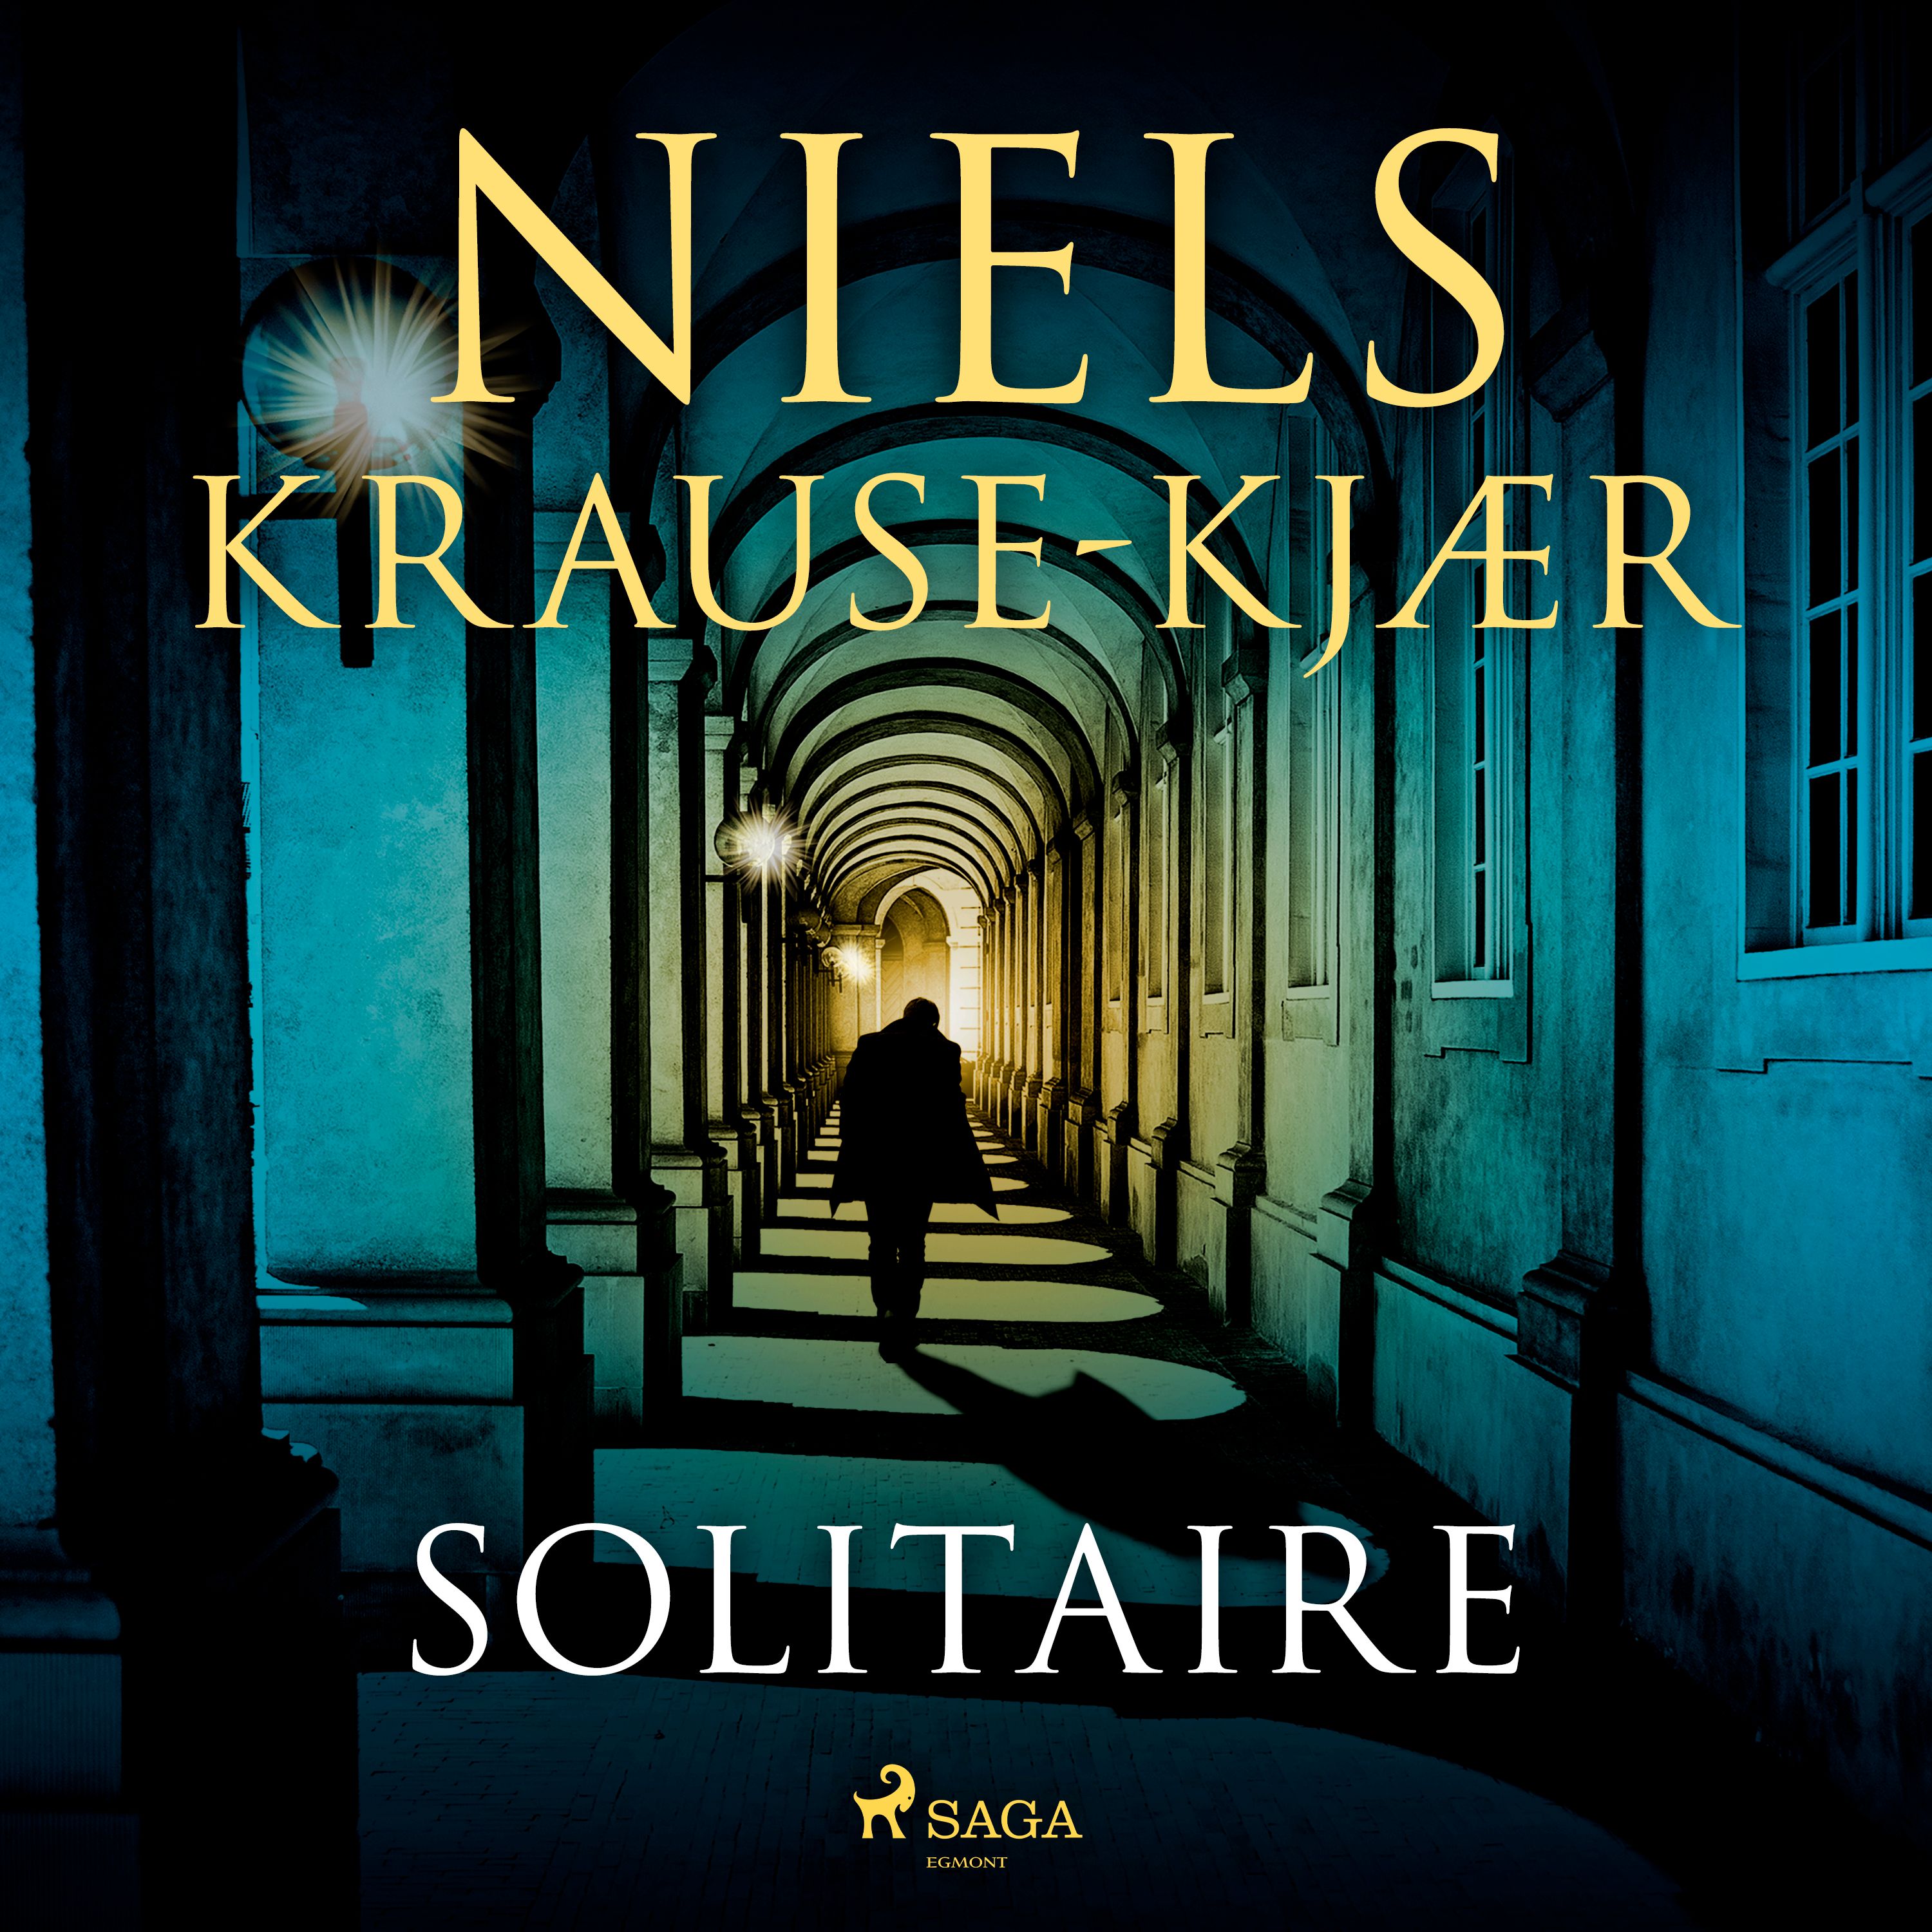 Solitaire, lydbog af Niels Krause-Kjær